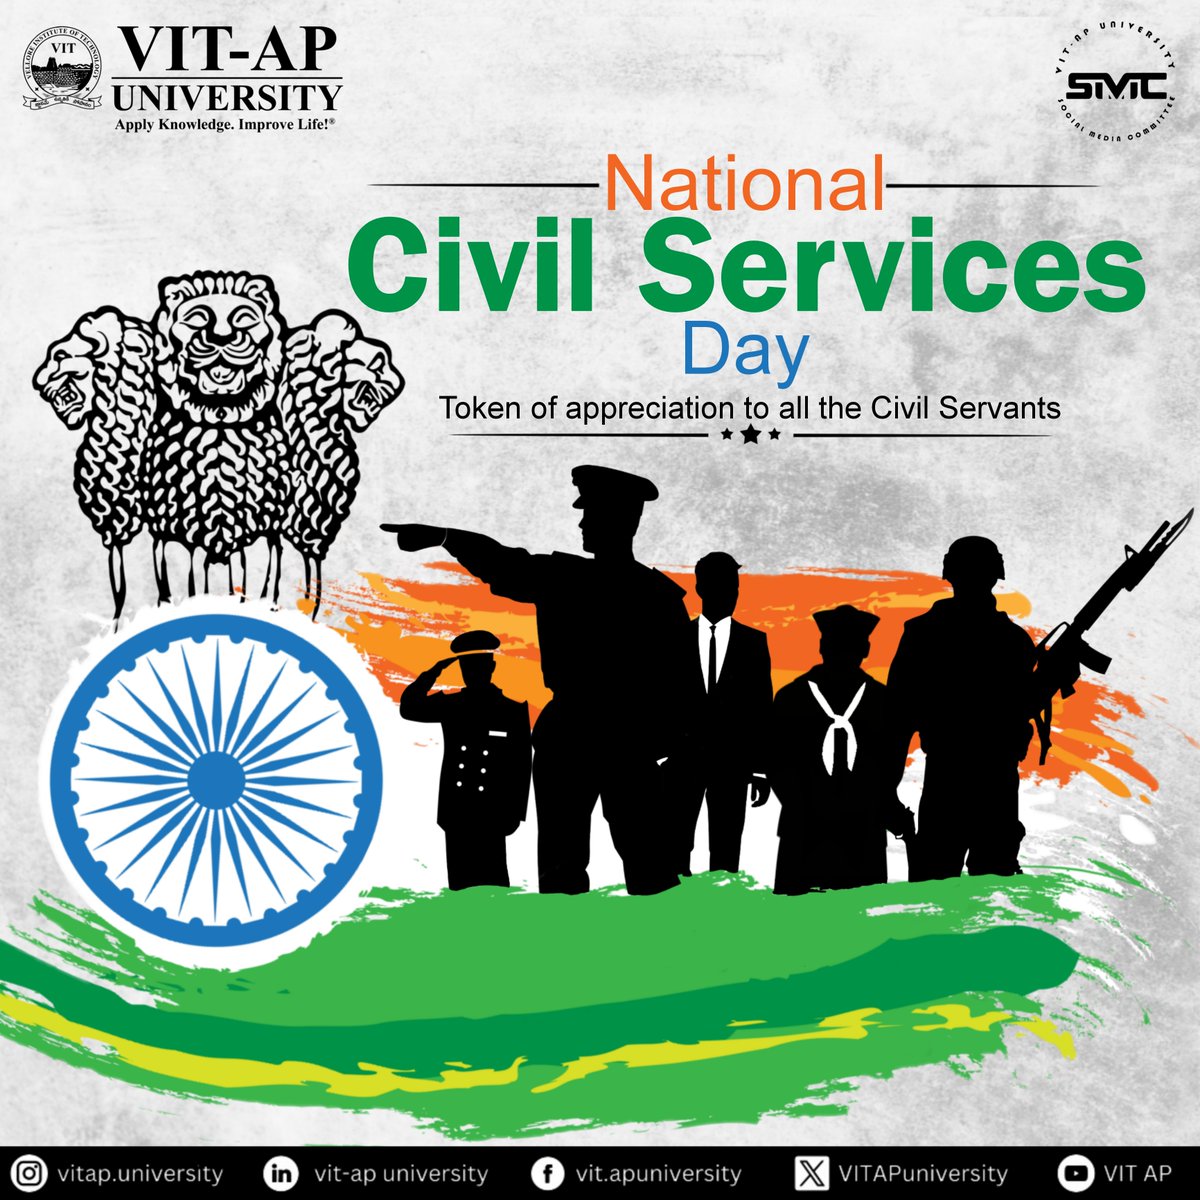 A big salute to our civil servants on #NationalCivilServiceDay! Your dedication to public service is commendable. #VIT #ThankYouCivilServants #VITAP #CivilService